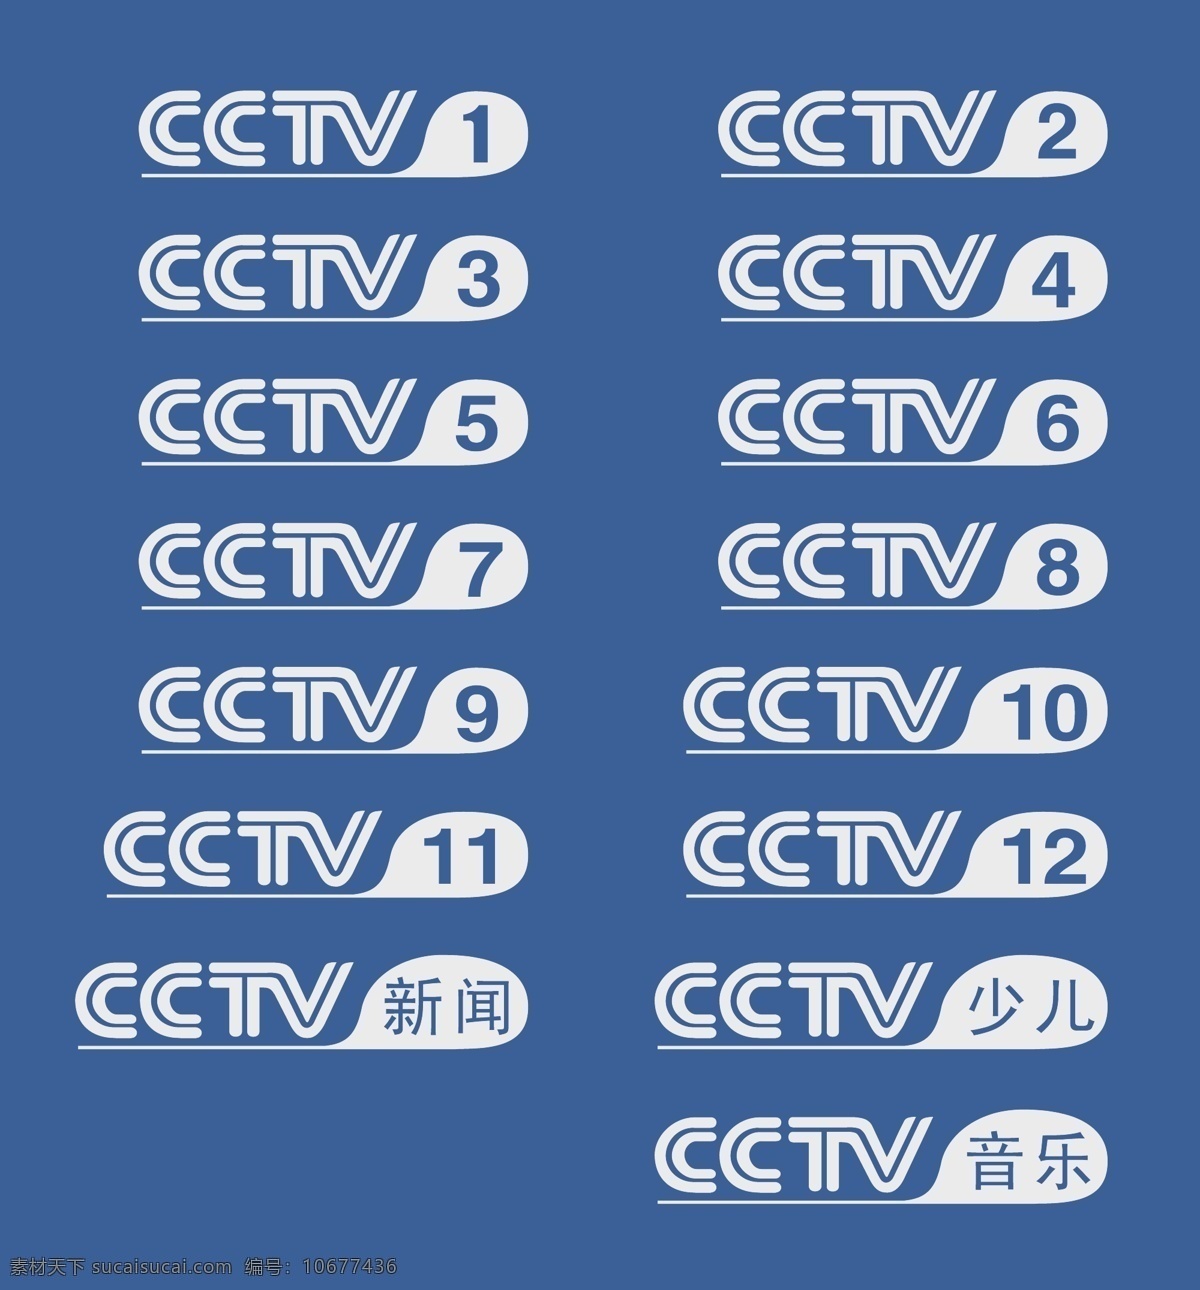 中央电视台 logo 大全 标志 央视 cctv 其他矢量 矢量素材 矢量素材专区 矢量图库